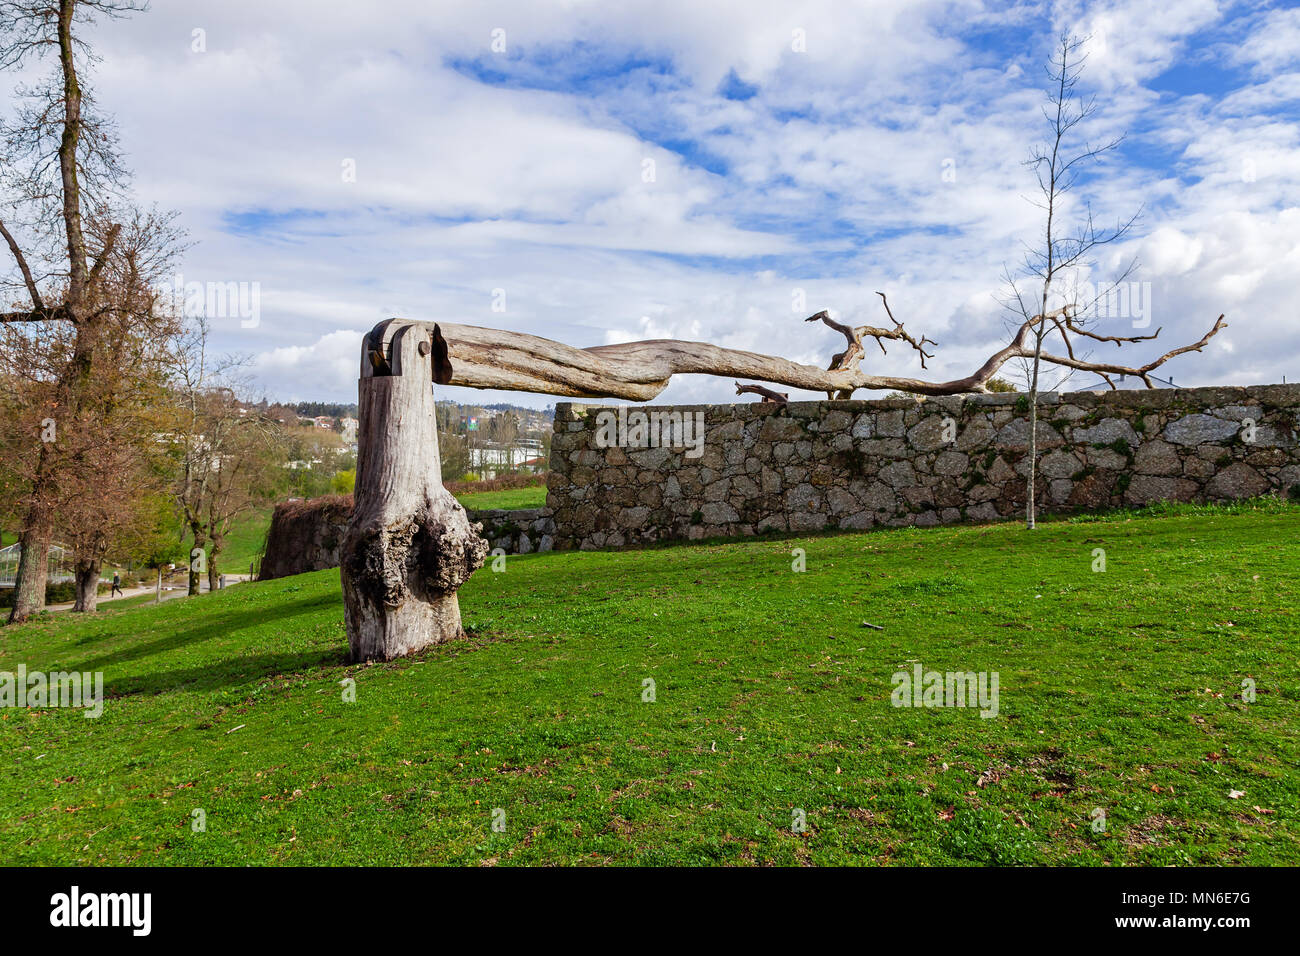 Vila Nova de Famalicao, Portugal. El arte urbano de un árbol muerto con una bisagra en el Parque da Devesa Parque Urbano. Foto de stock